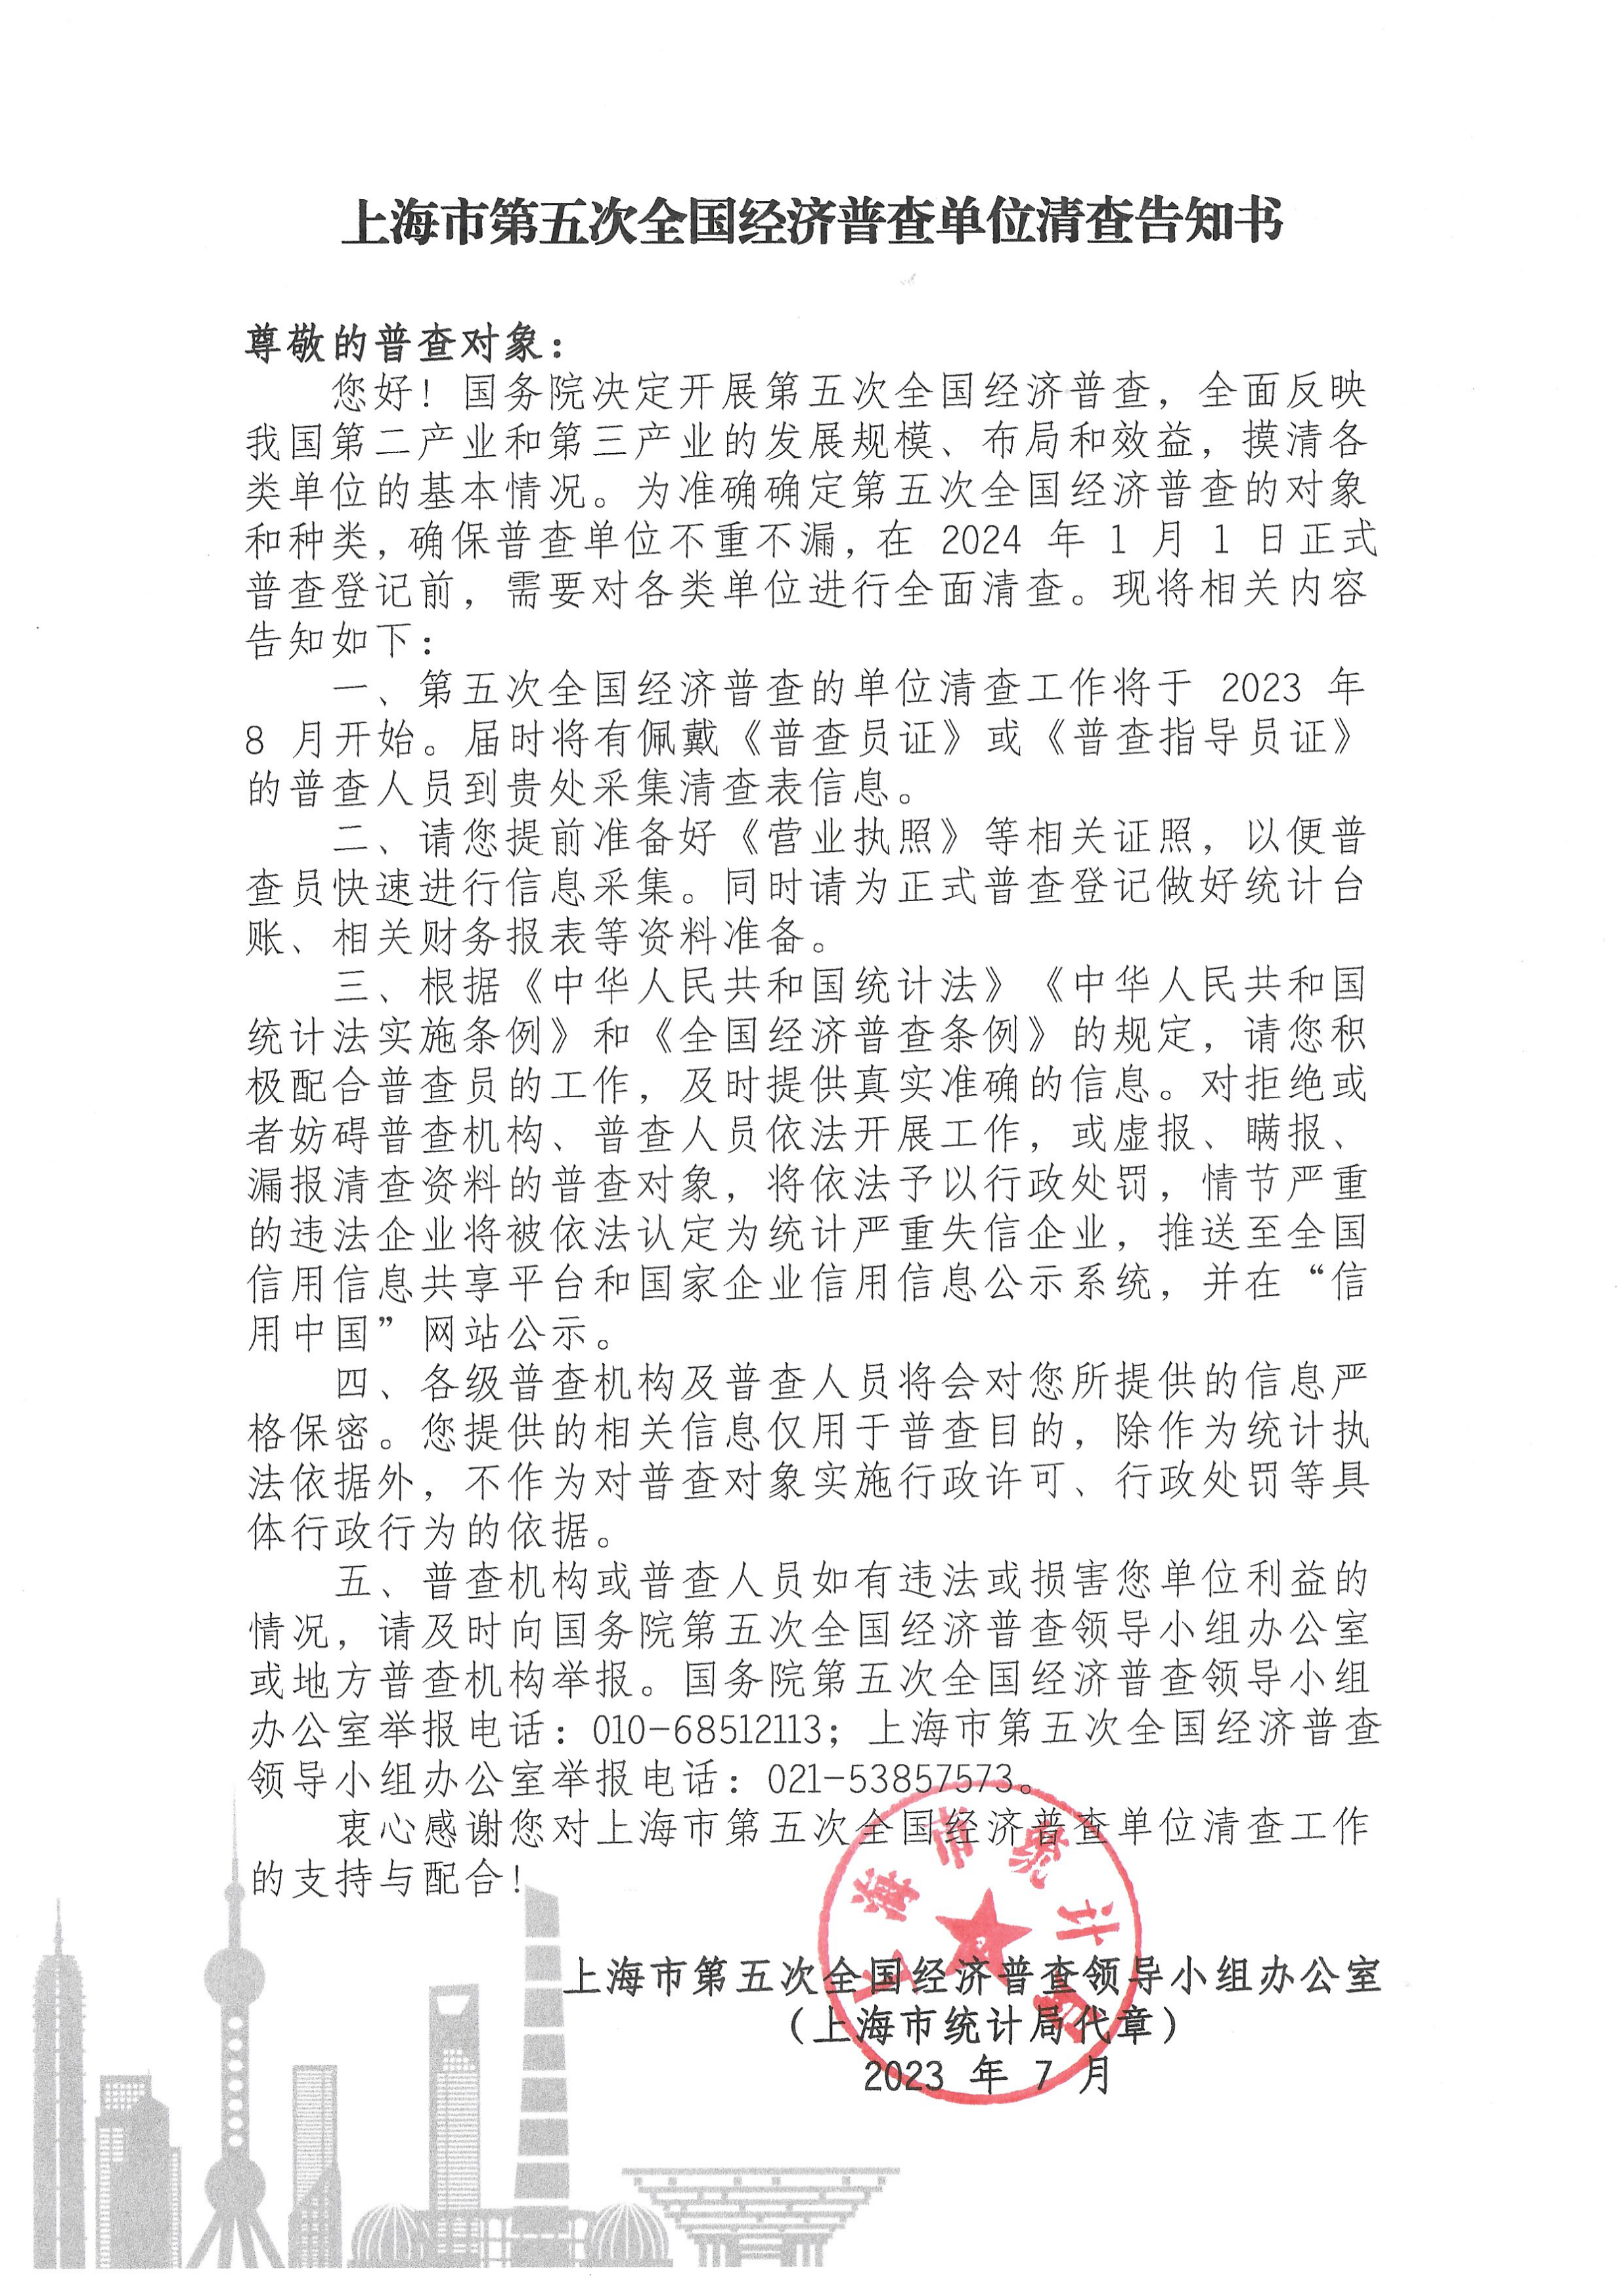 告知书-300-中文版-有图_page_1.png